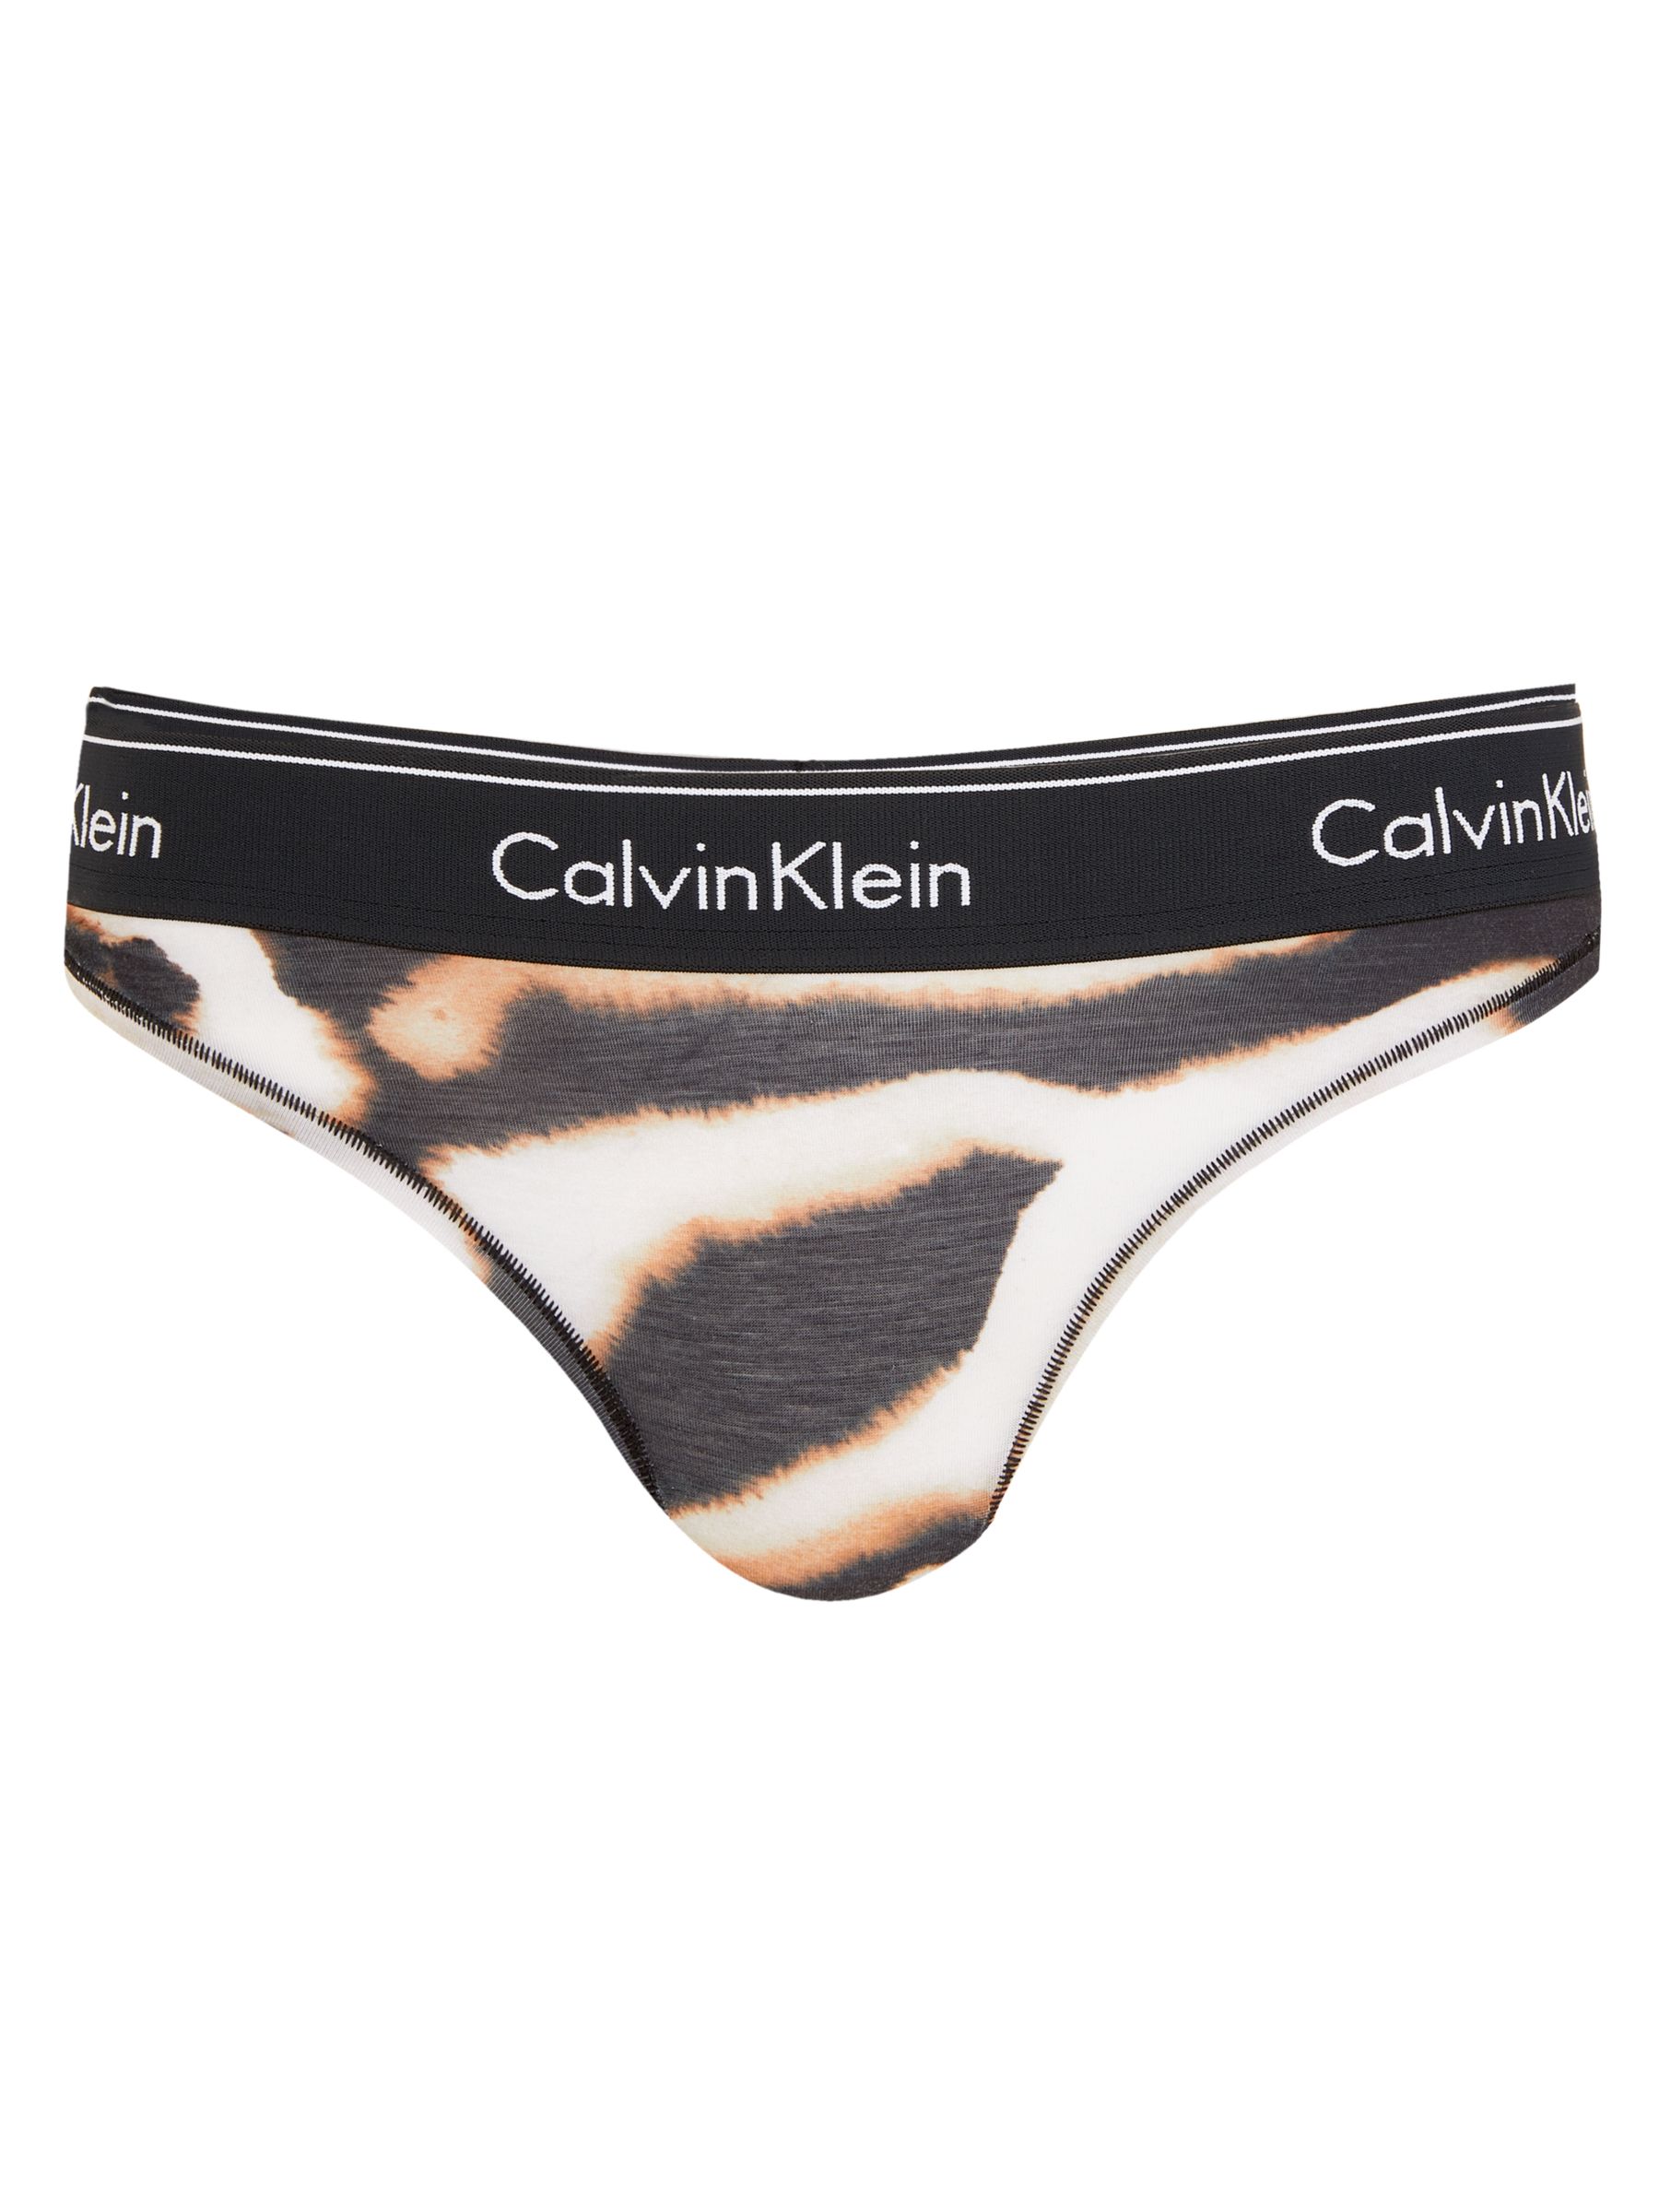 calvin klein leopard print underwear